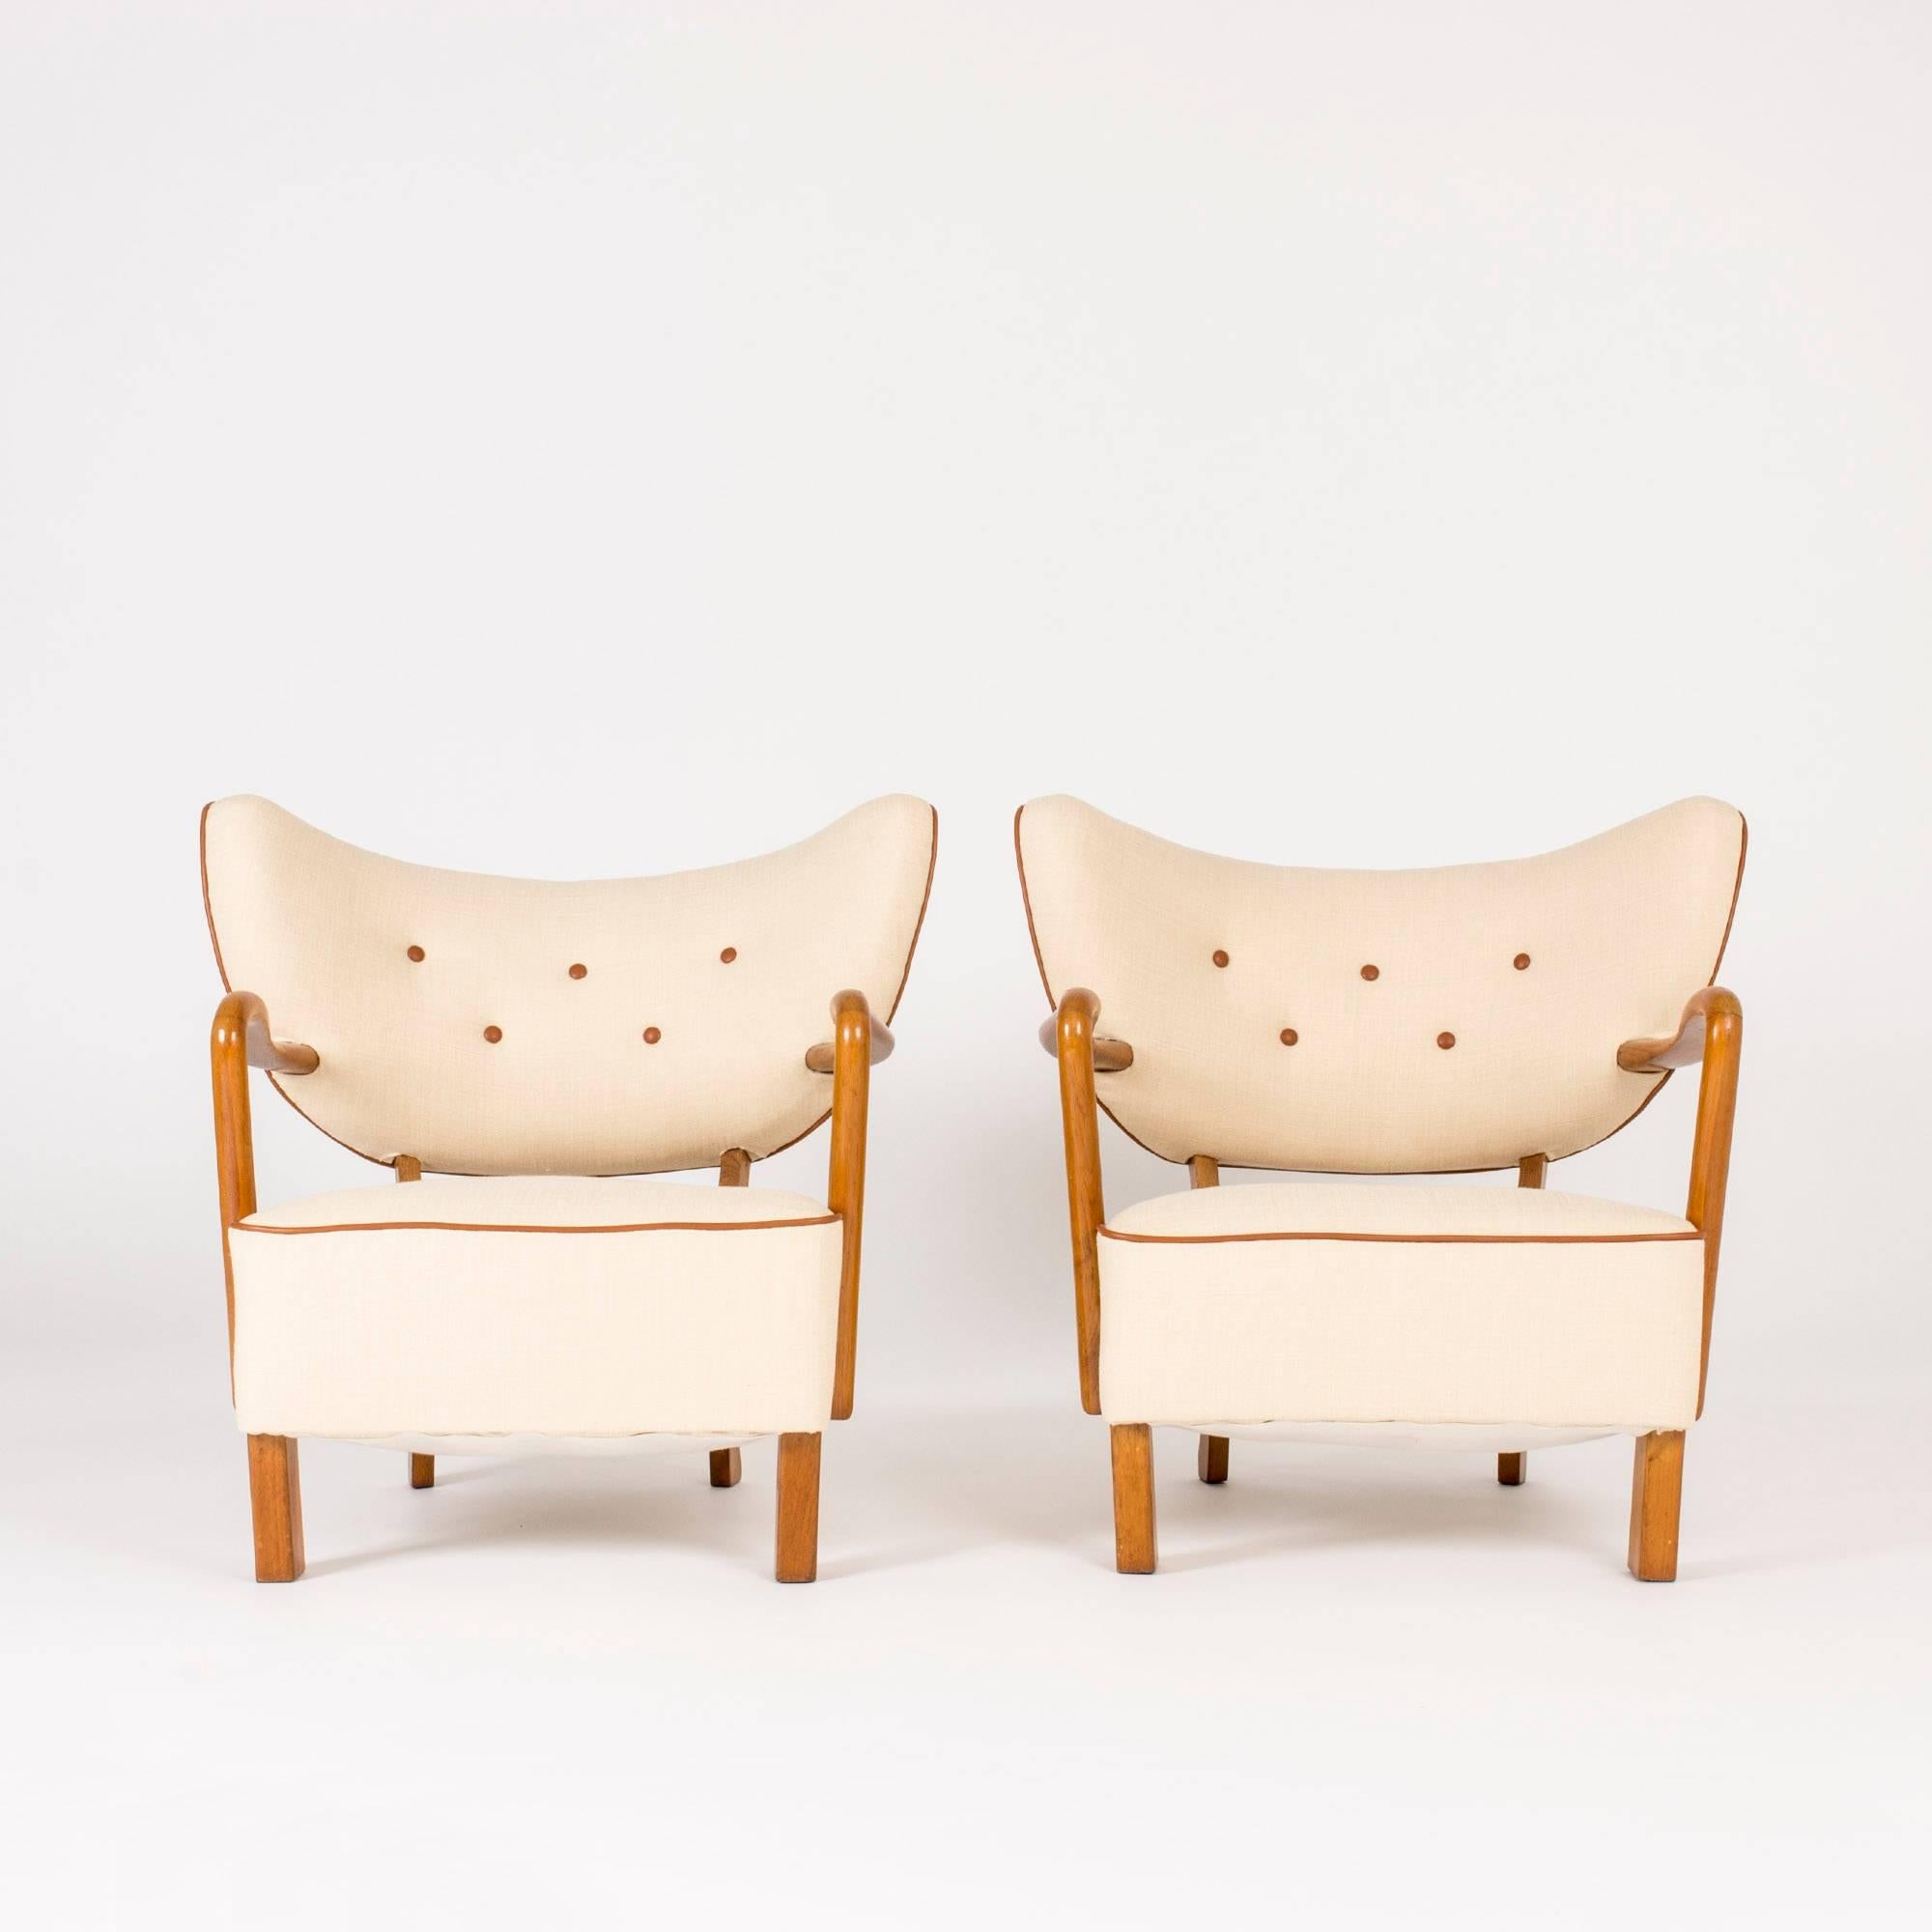 Paar lounge-stühle by Viggo Boesen (Skandinavische Moderne)